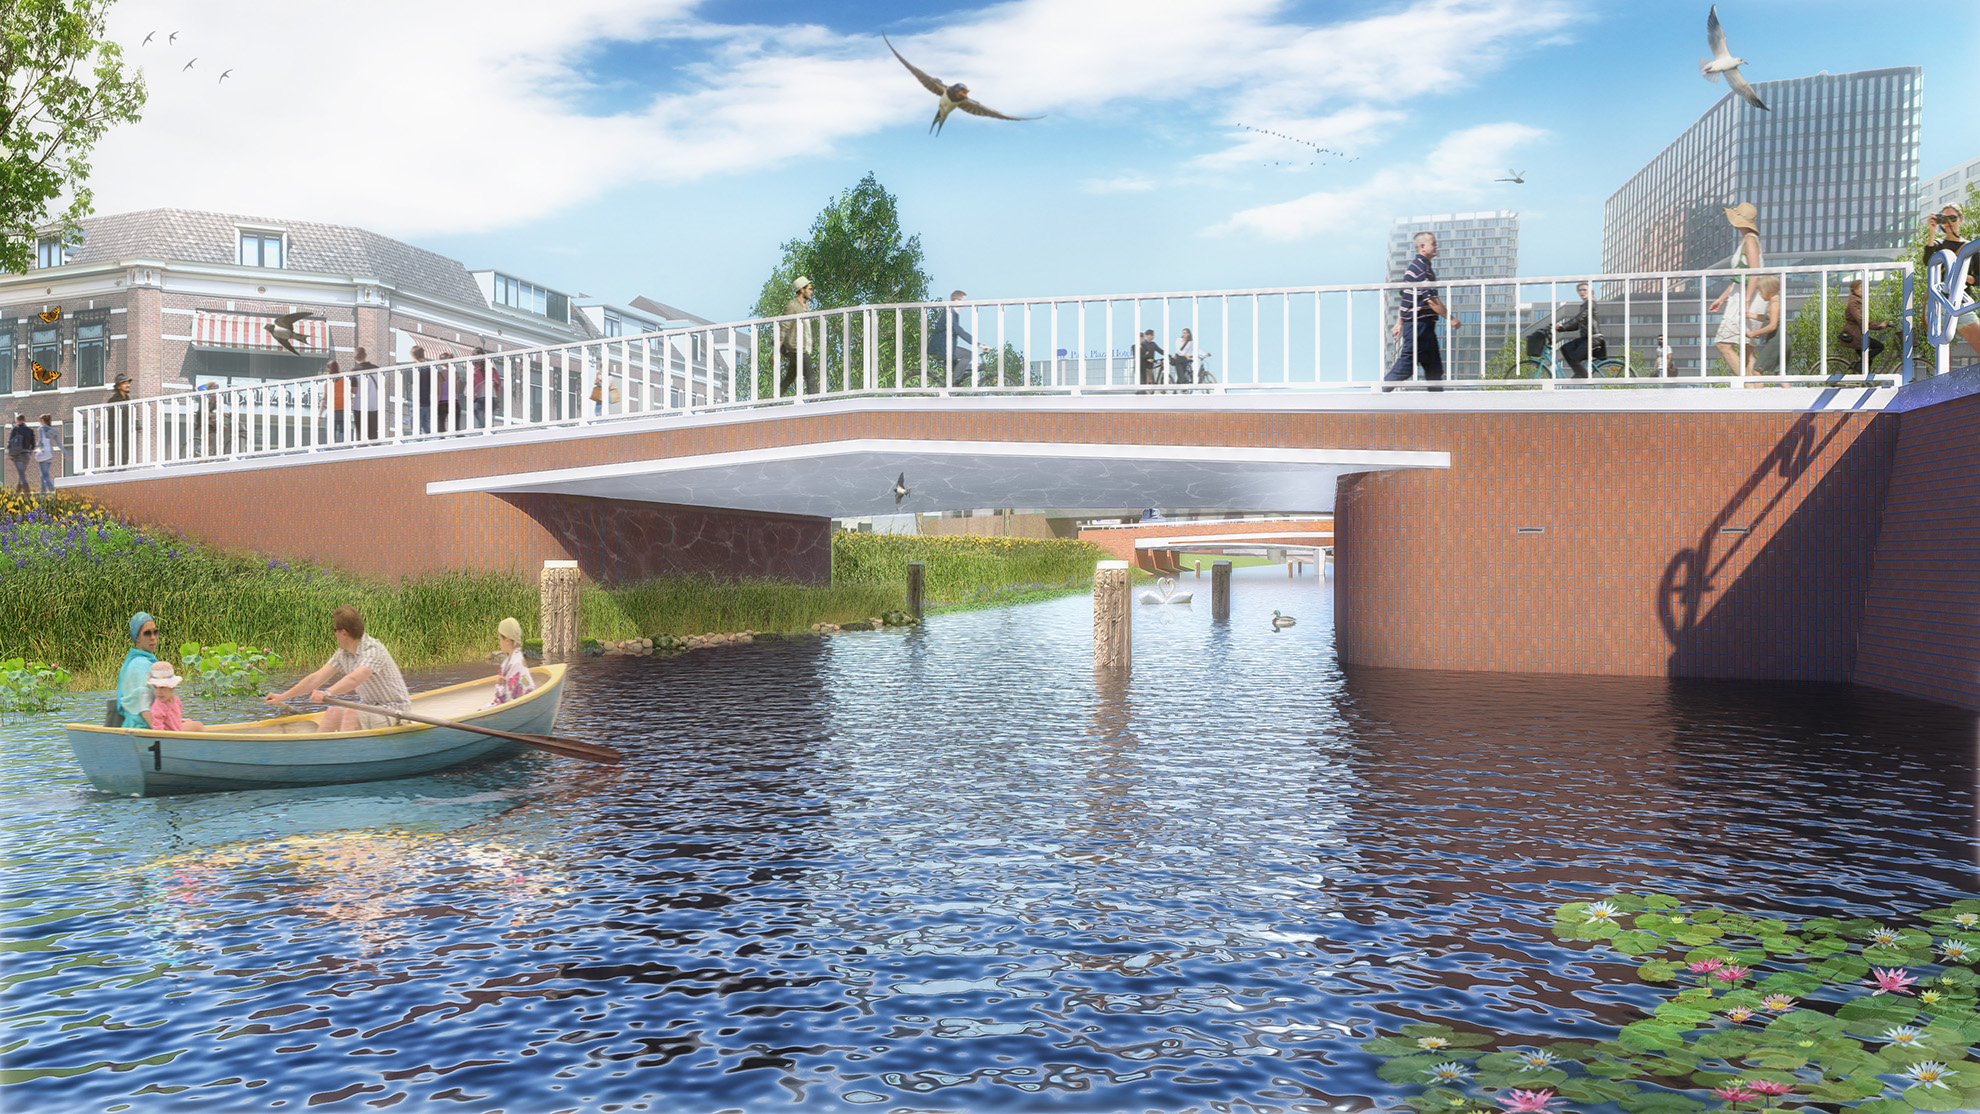 Kanonstraatbrug en Dambrug in Utrecht